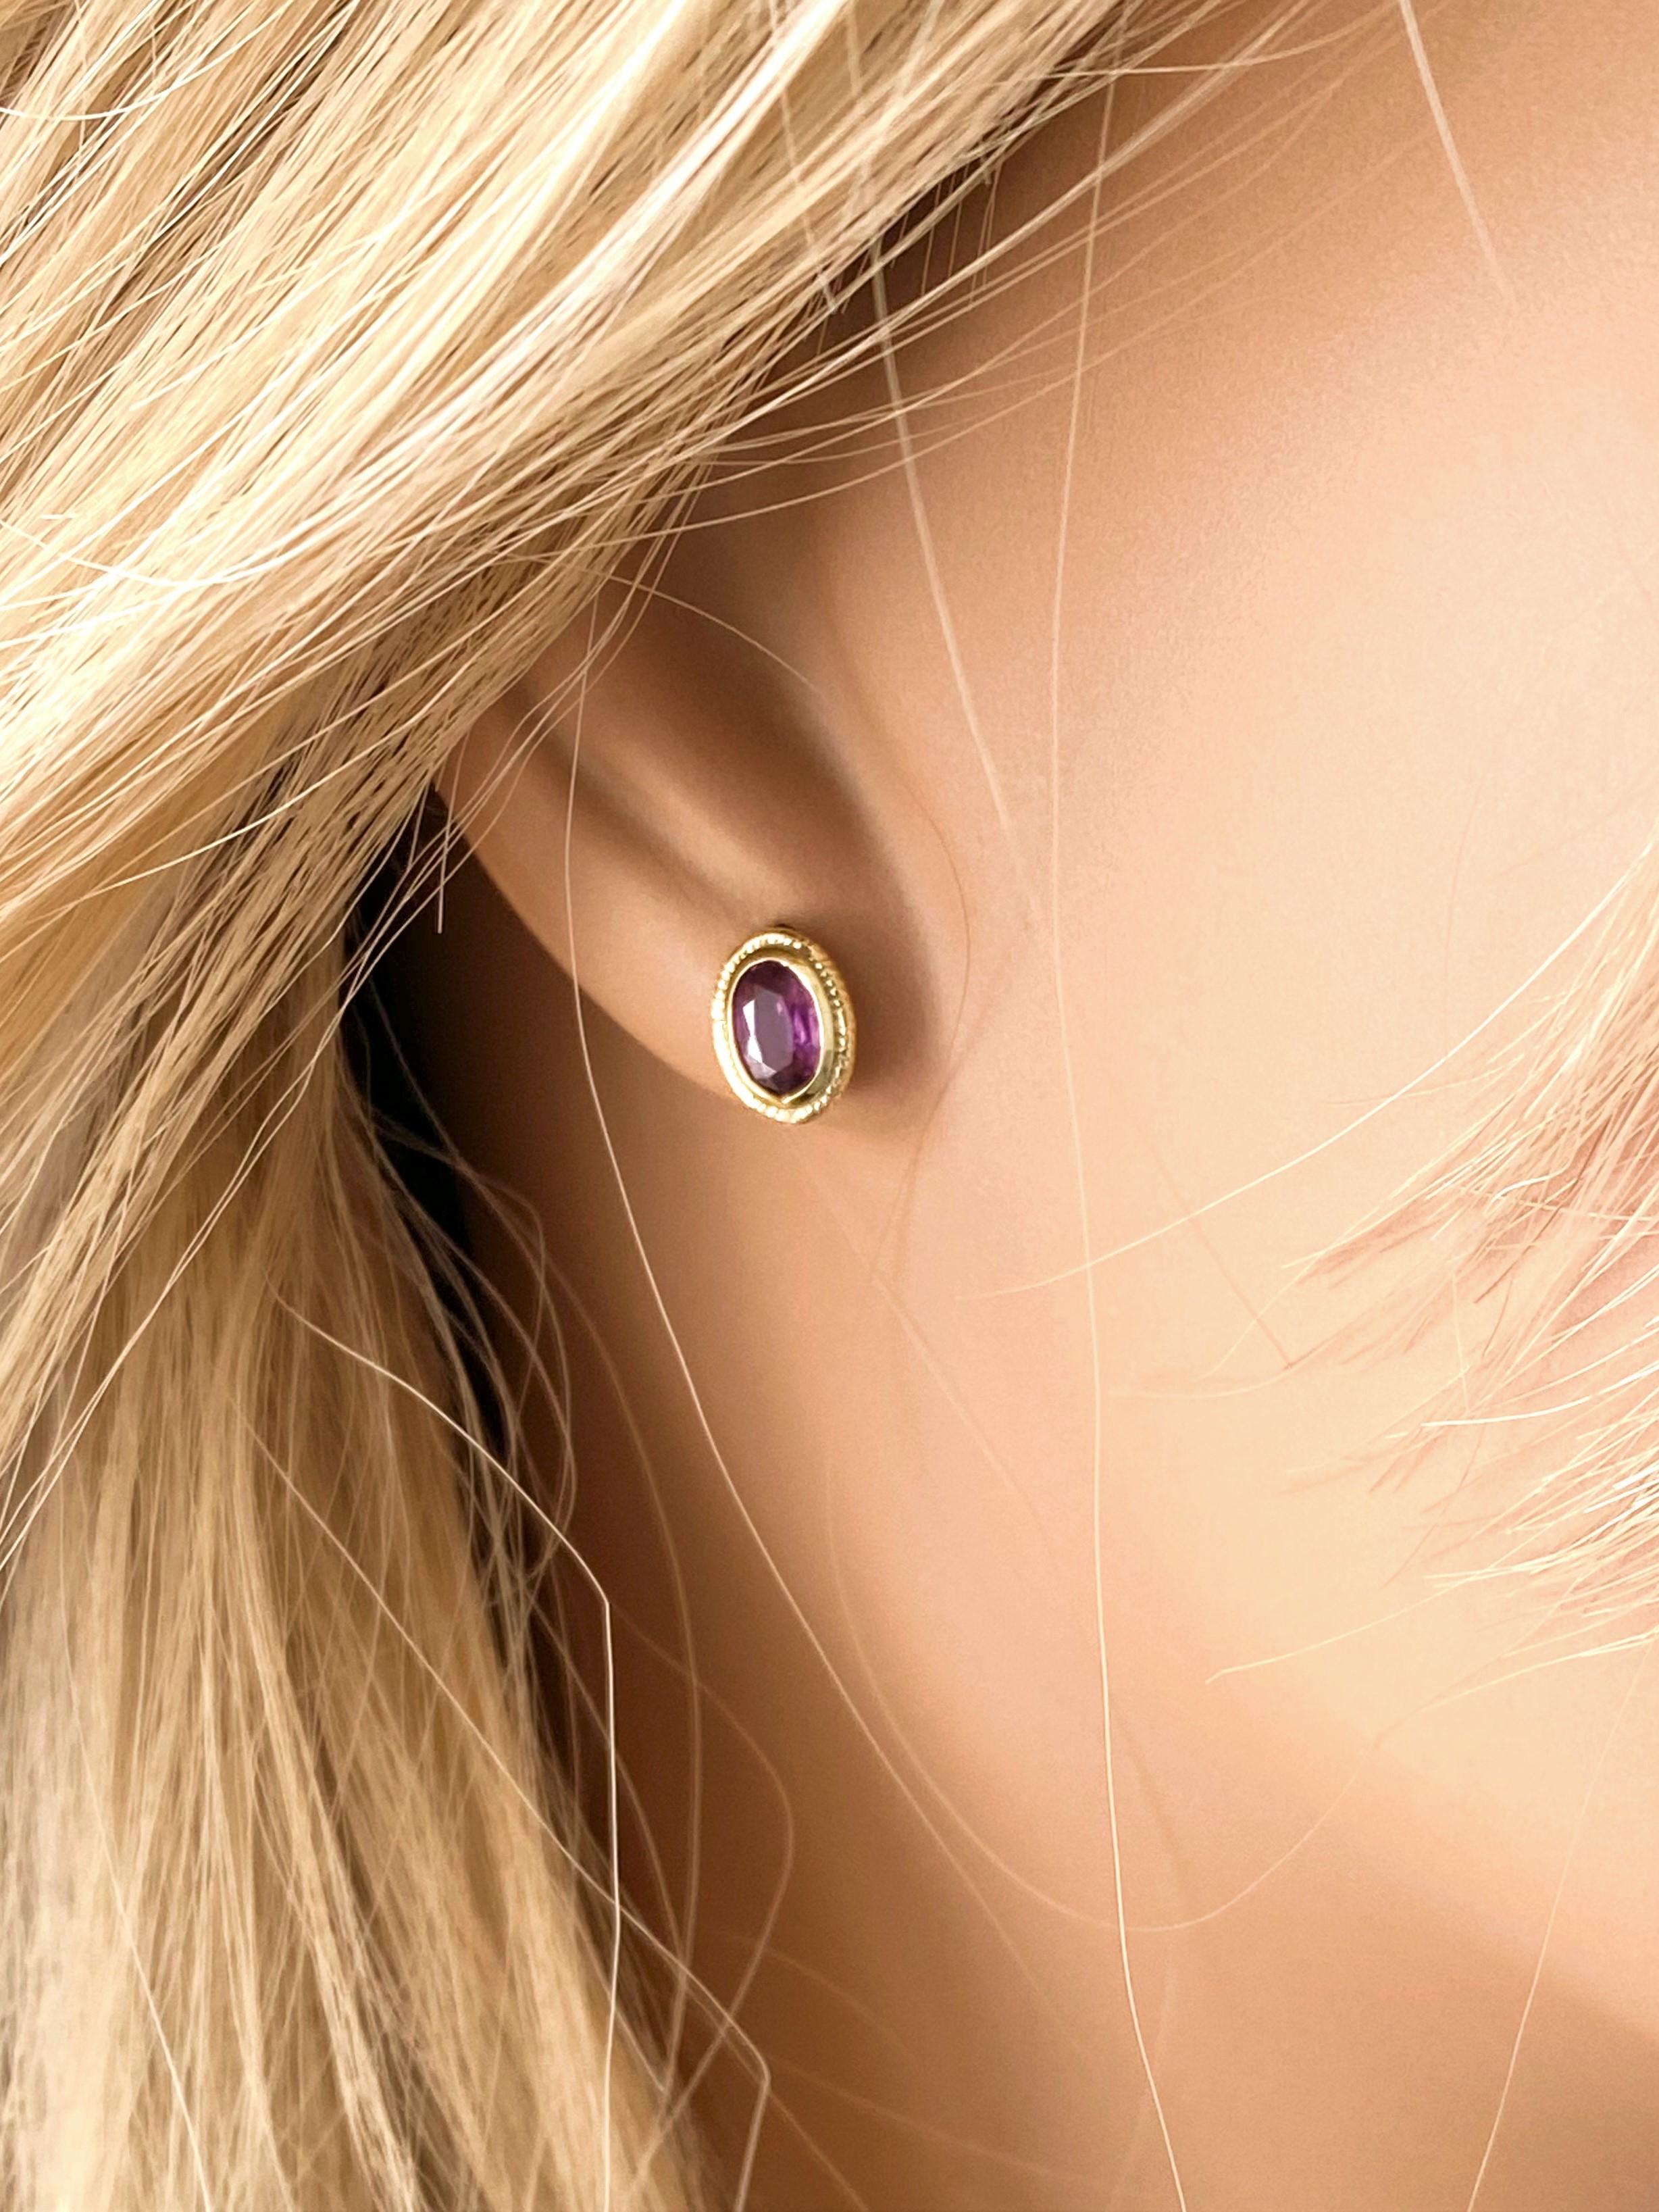 oval shape earrings designs